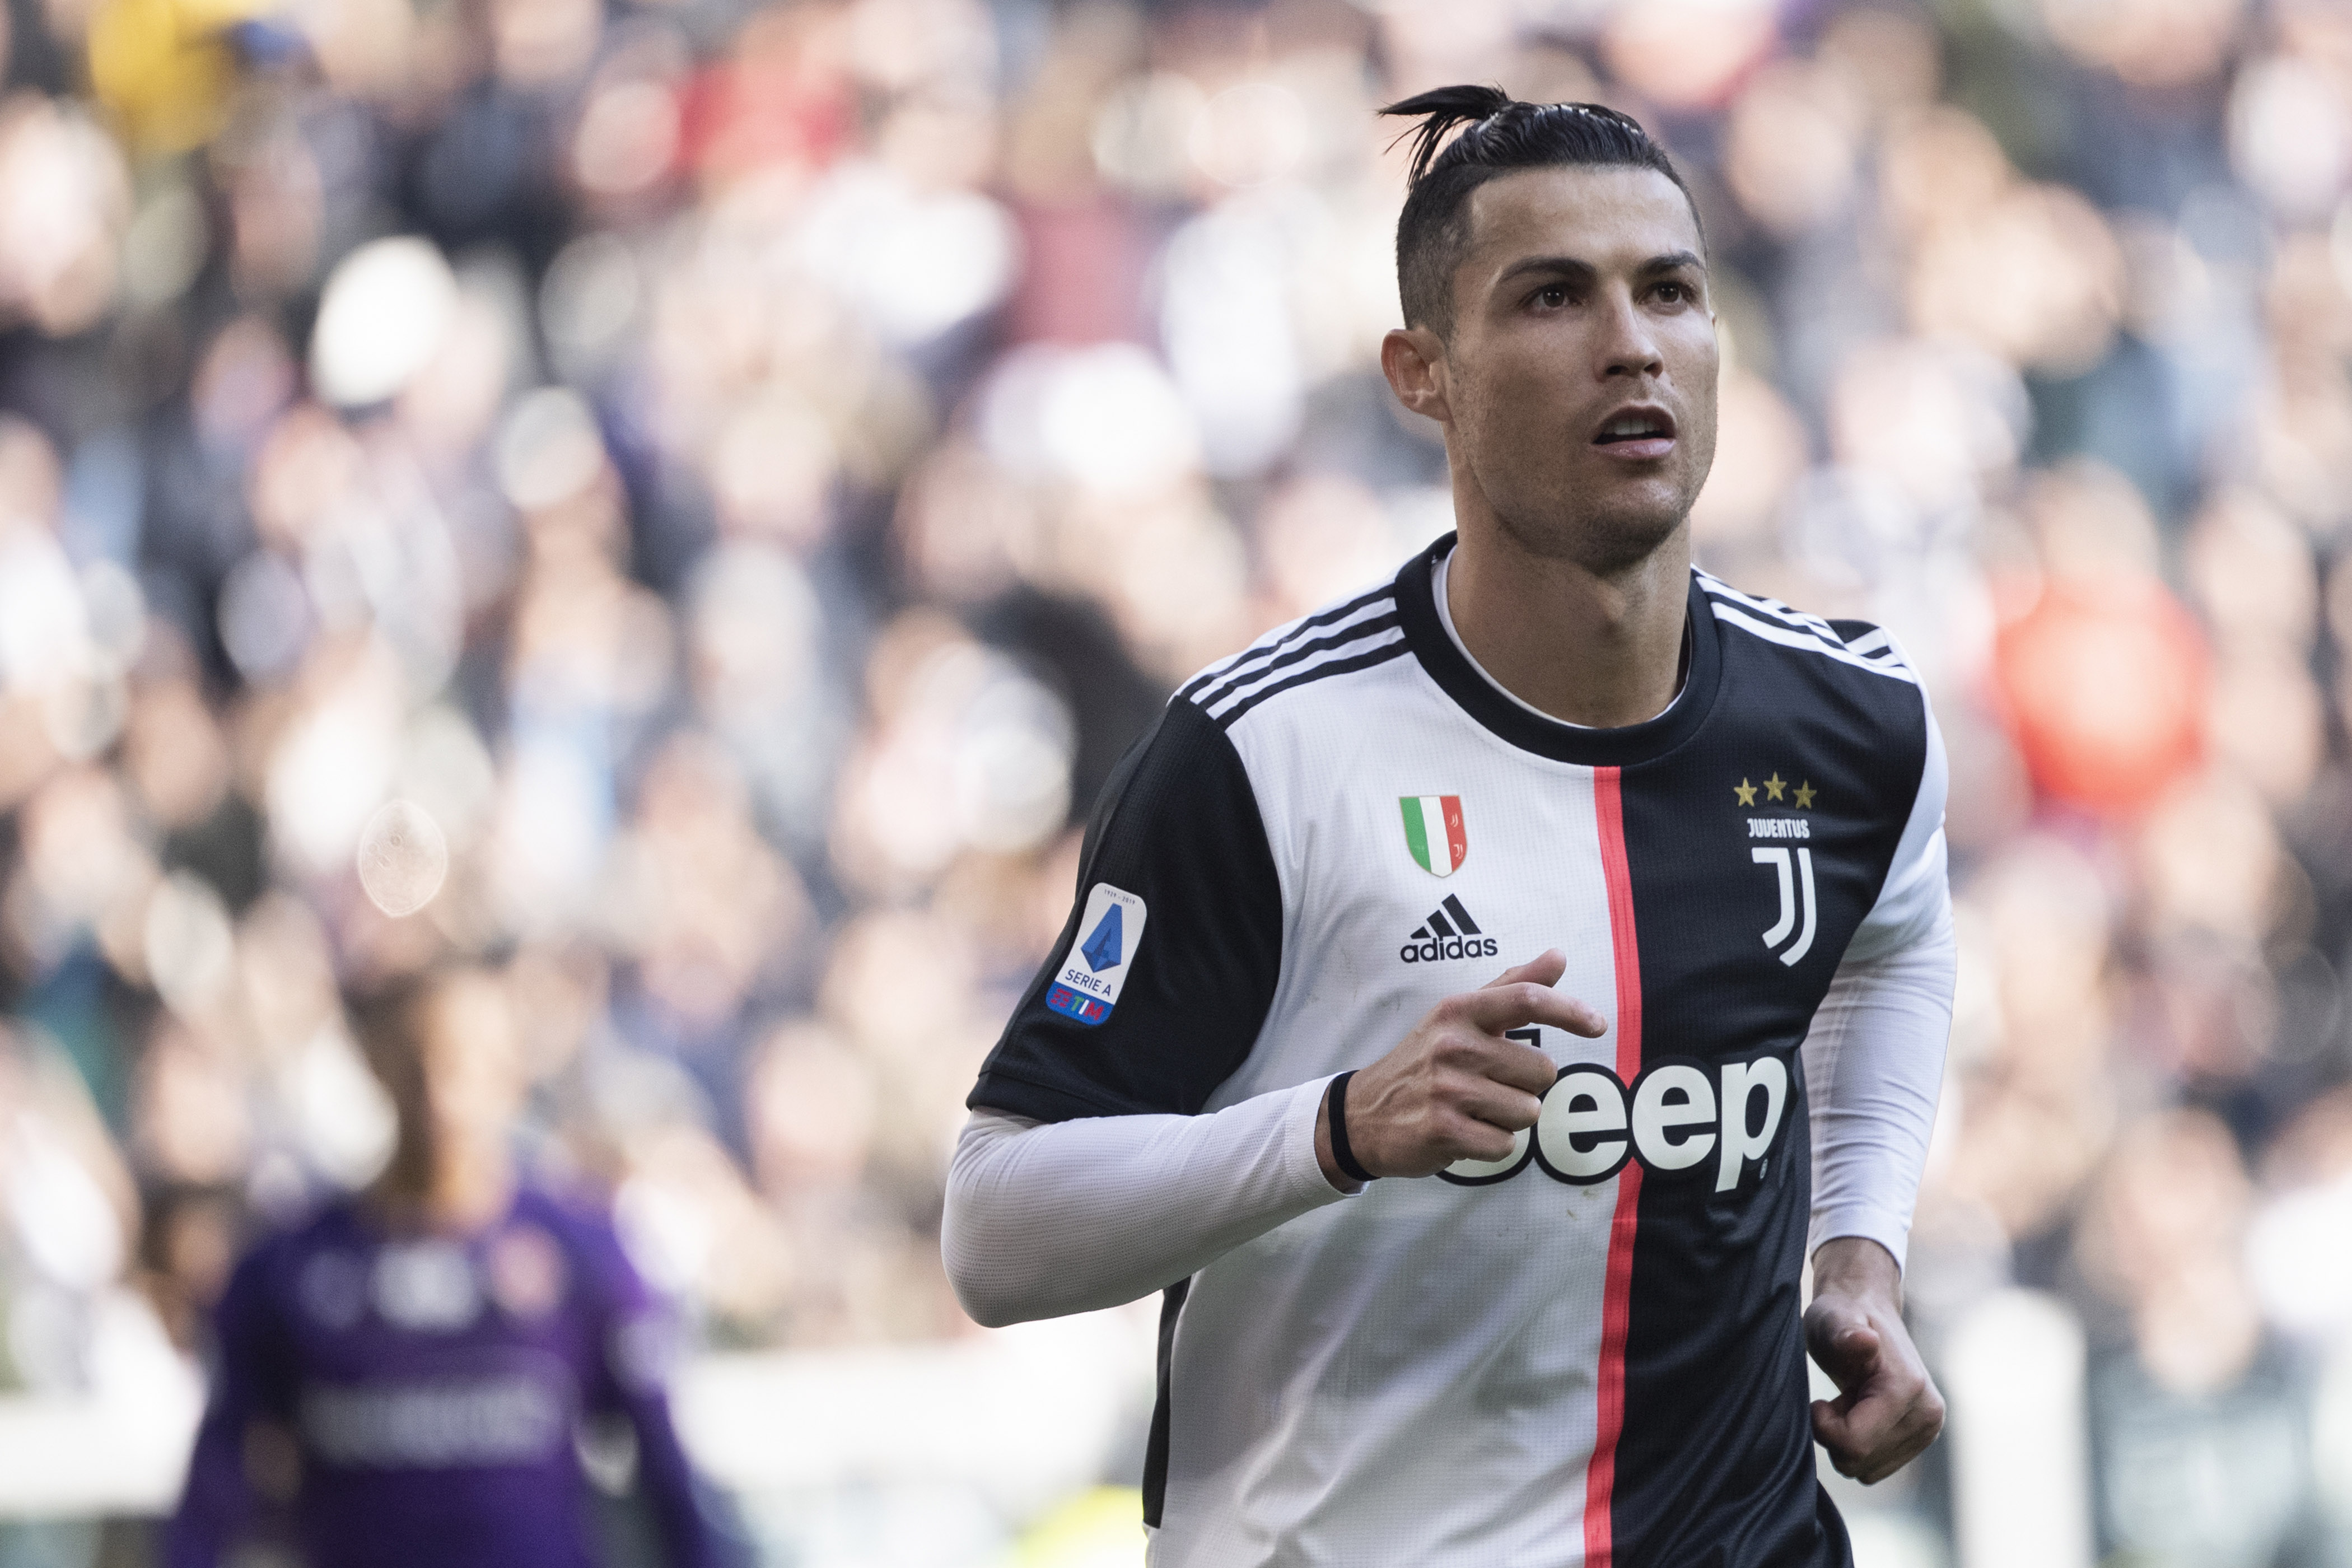 ESQUENTOU - A Juventus não descarta a possibilidade de vender Cristiano Ronaldo, de acordo com o diário “Il Messaggero". A equipe de Turim não aceitaria repassá-lo por menos de 70 milhões de euros (R$ 397 milhões). No entanto, é difícil que algum time tenha esse valor para pagar o valor.